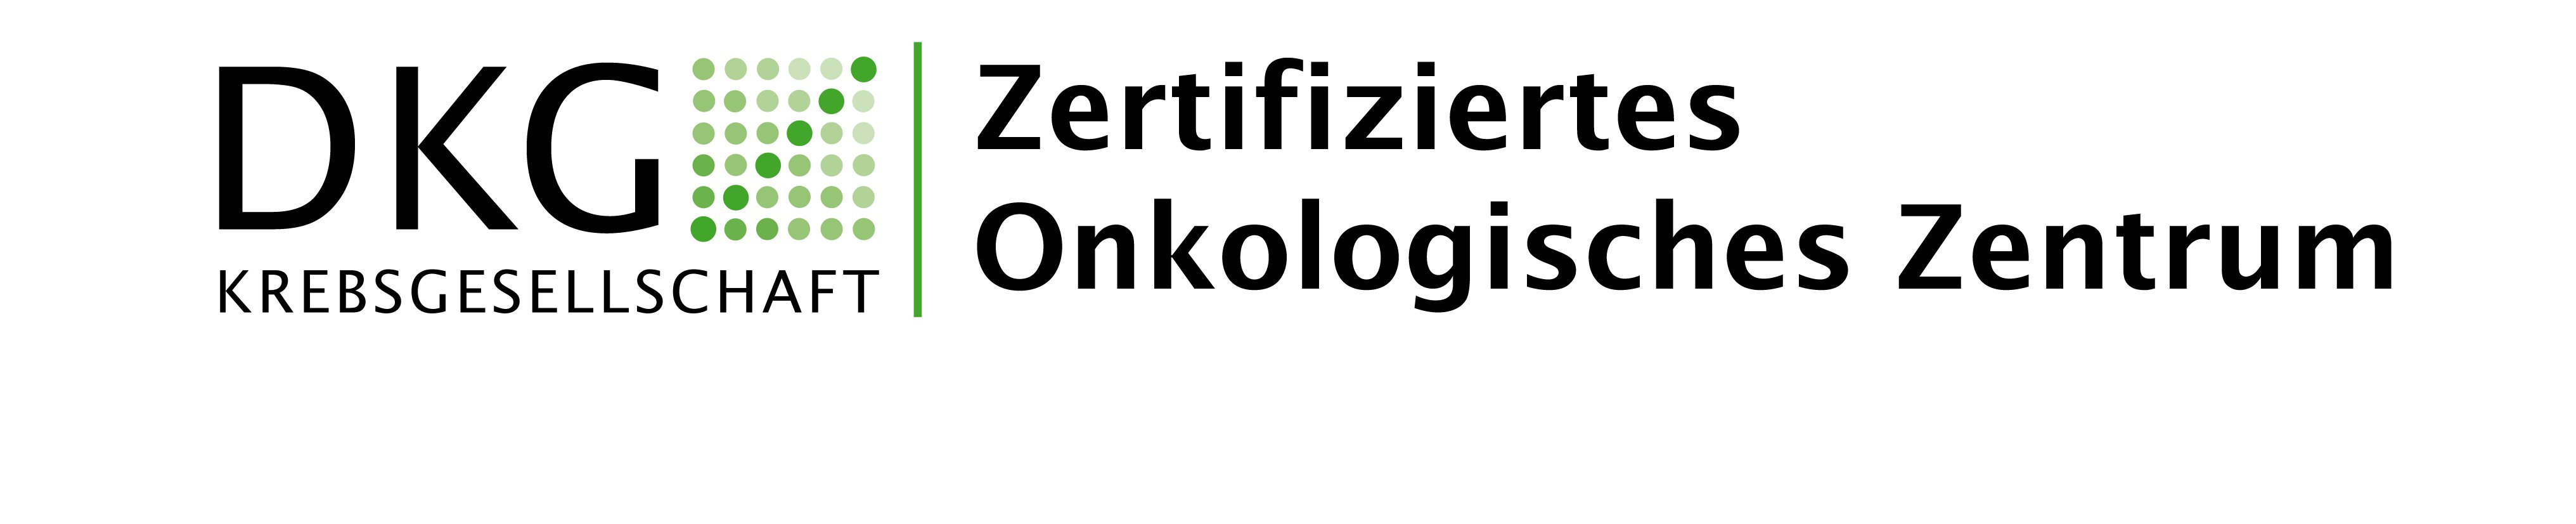 Logo: DKG Krebsgesellschaft Zertifiziertes Onkologisches Zentrum.